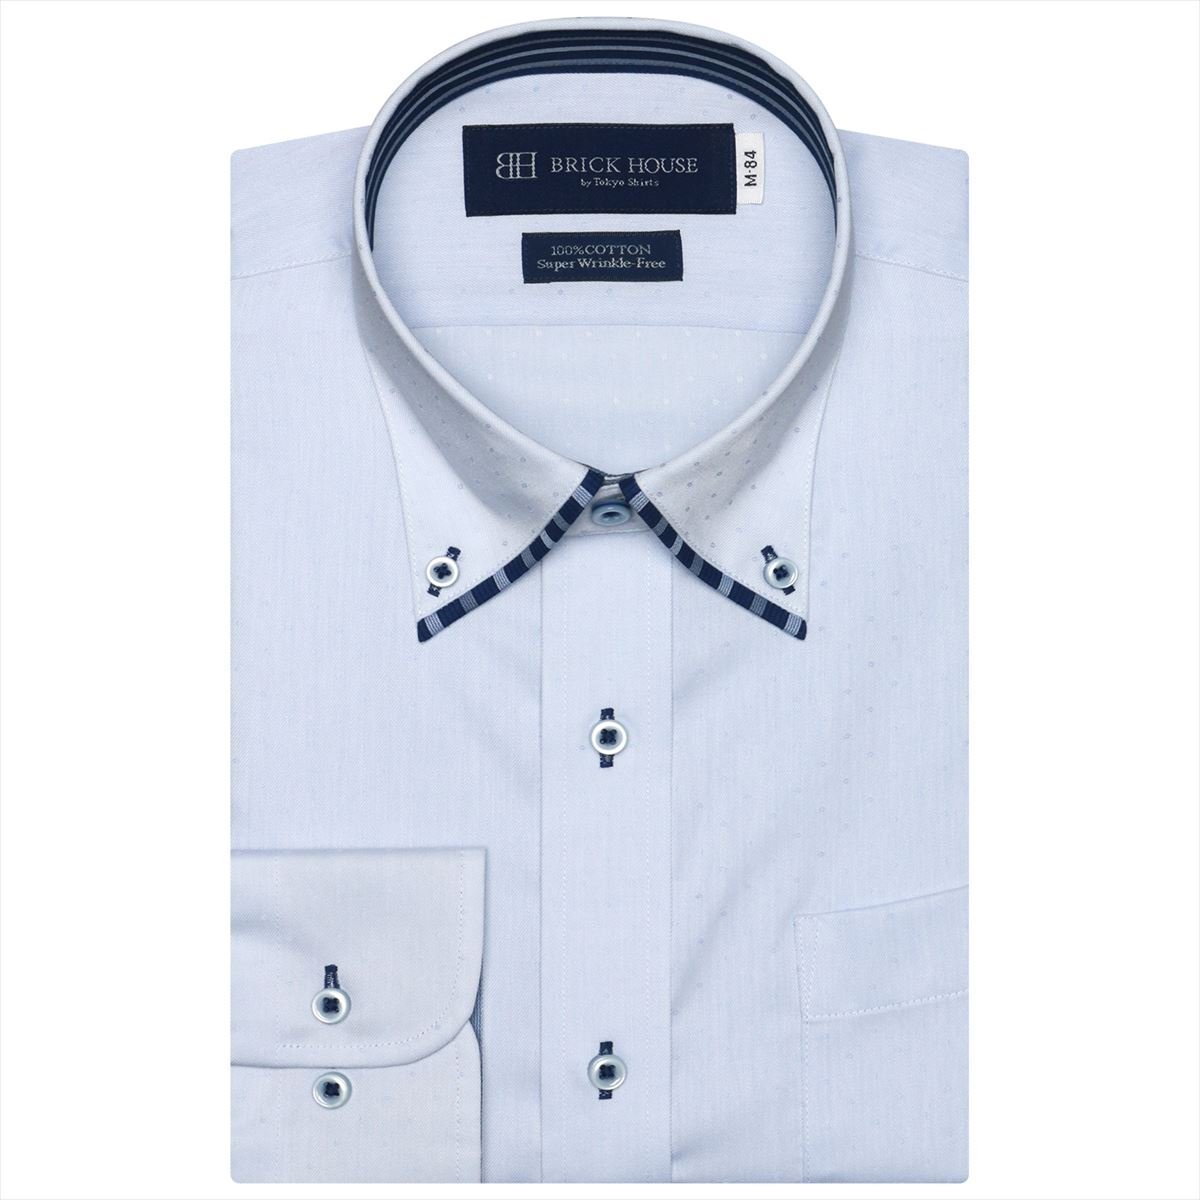 M) ボタンダウンカラー 長袖 形態安定 ワイシャツ 綿100 ご注文で当日